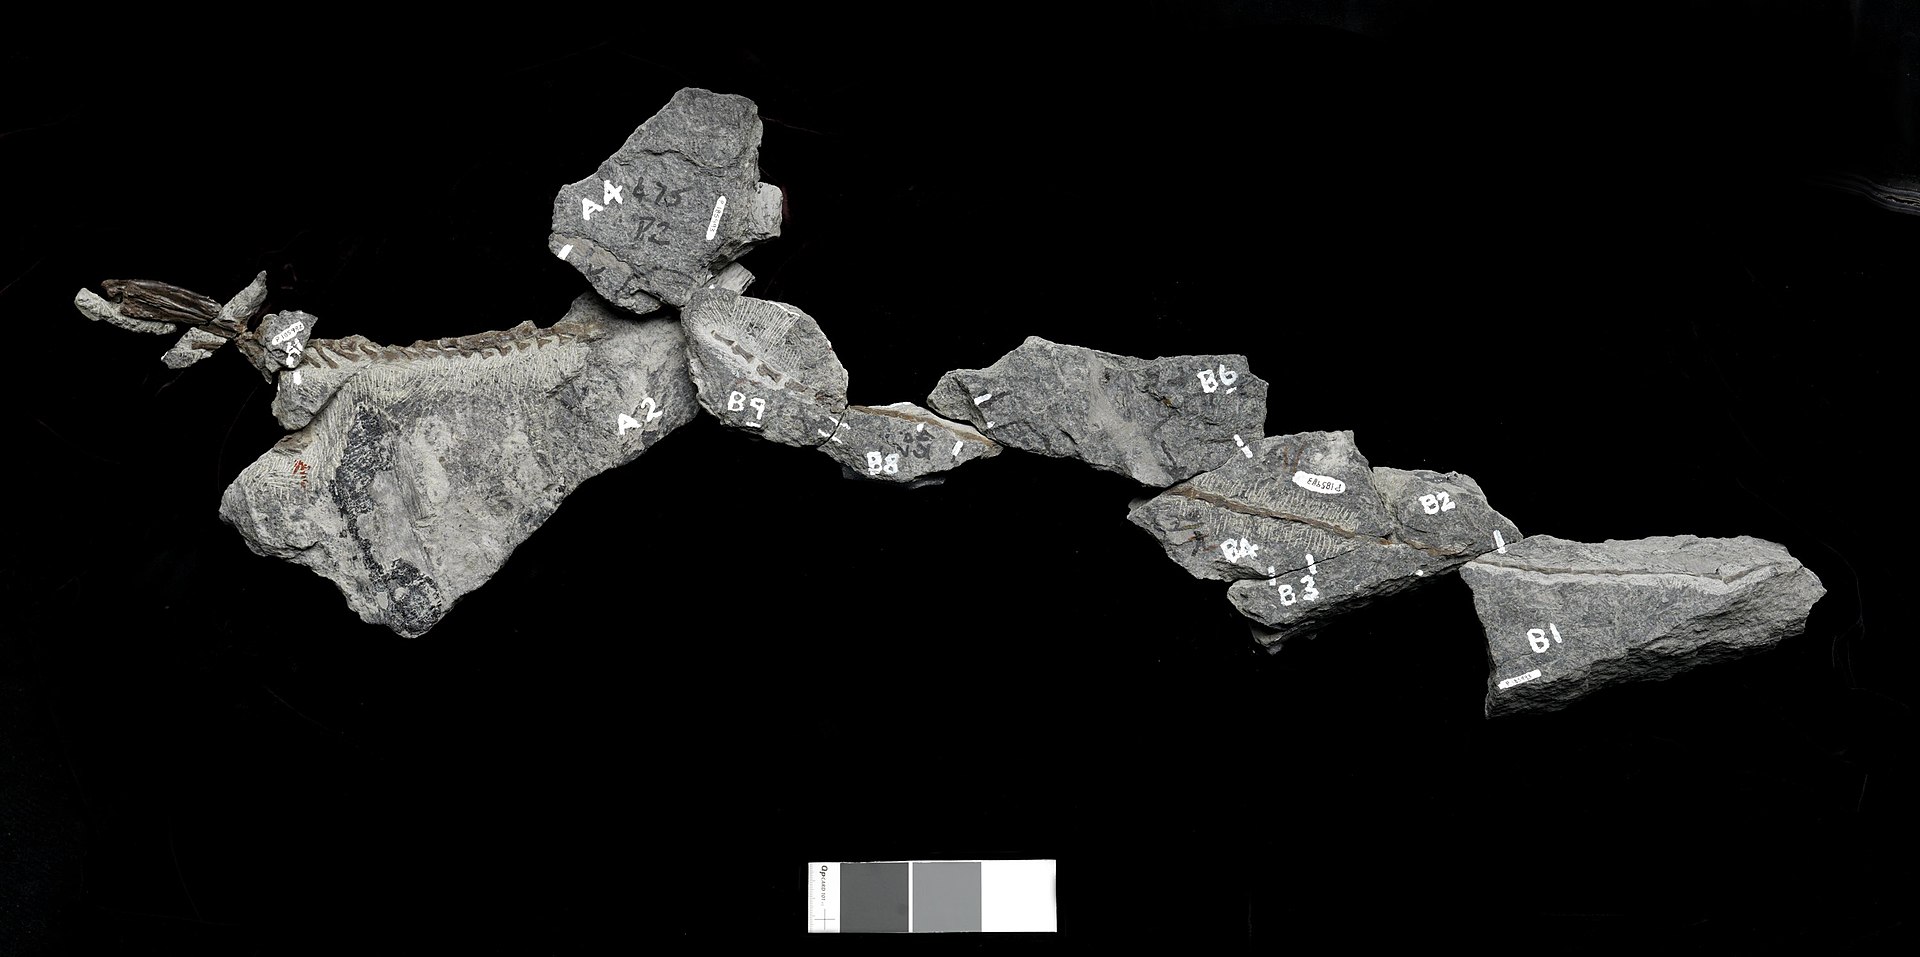 Fosilie zahrnující ocasní část páteře a některé další části kostry menšího ornitopodního dinosaura z raně křídové „polární“ Austrálie (resp. Gondwany). Dříve se předpokládalo, že tato neobvykle dlouhá kaudální část páteře ze sedimentů geologického so